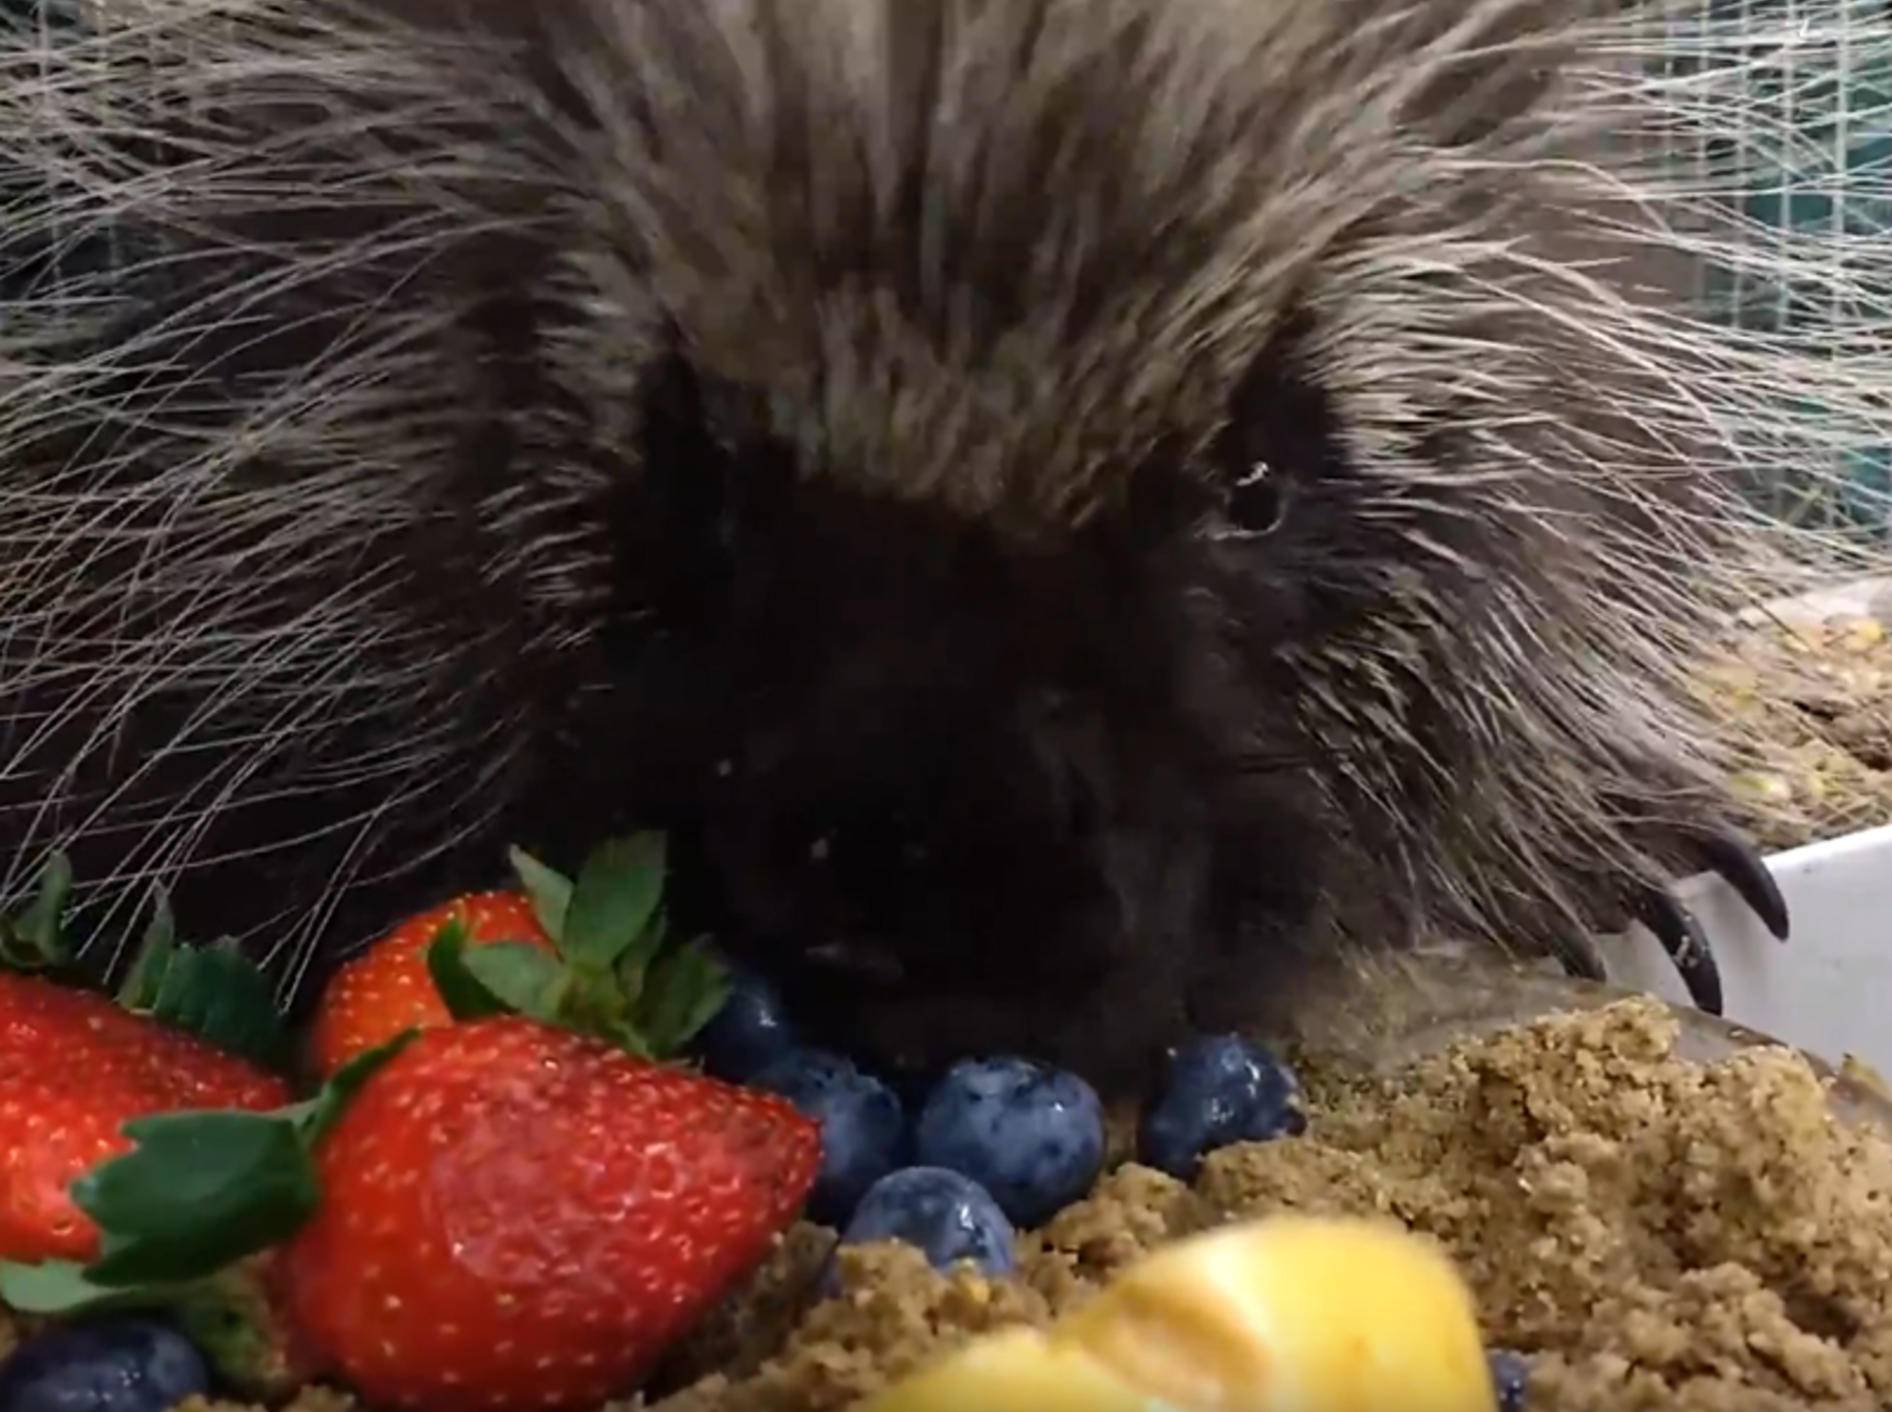 Stachelschwein tut sich an Obststückchen gütlich – YouTube / Cara Contardi